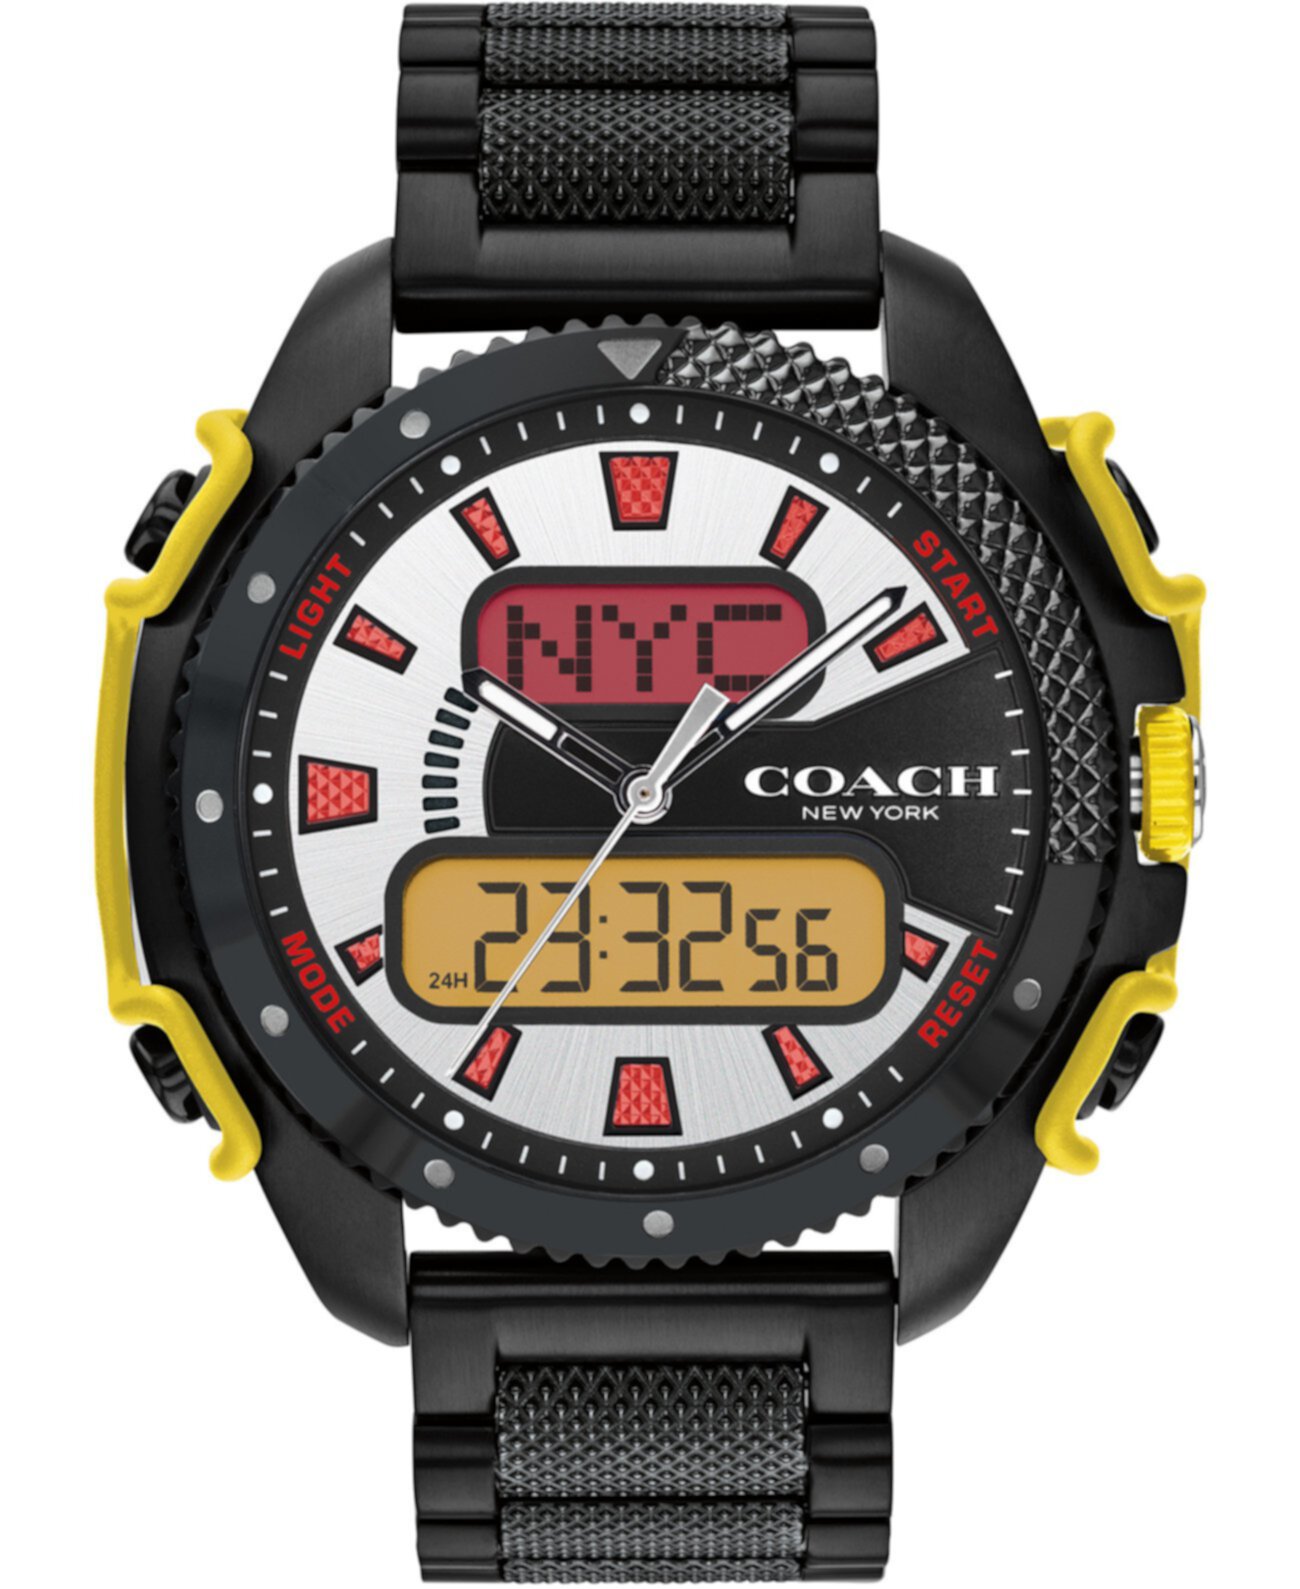 Мужские аналоговые цифровые цифровые часы-браслет из нержавеющей стали C001 46 мм, лимитированная серия COACH